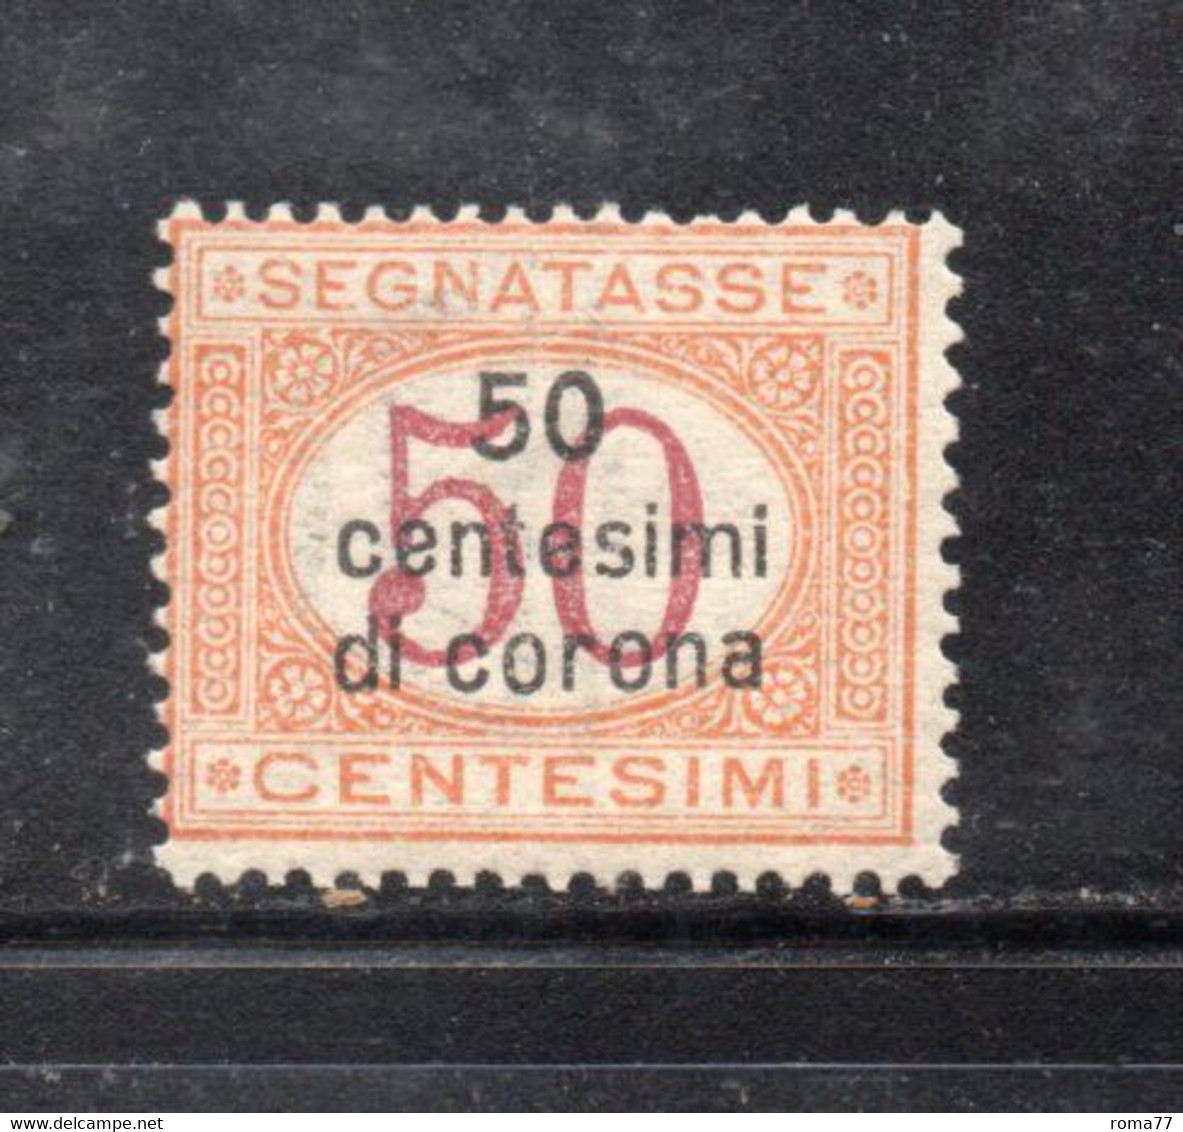 Y2274 - DALMAZIA 1922, Segnatasse Il N. 1  Con Gomma Integra  ***  MNH - Dalmazia